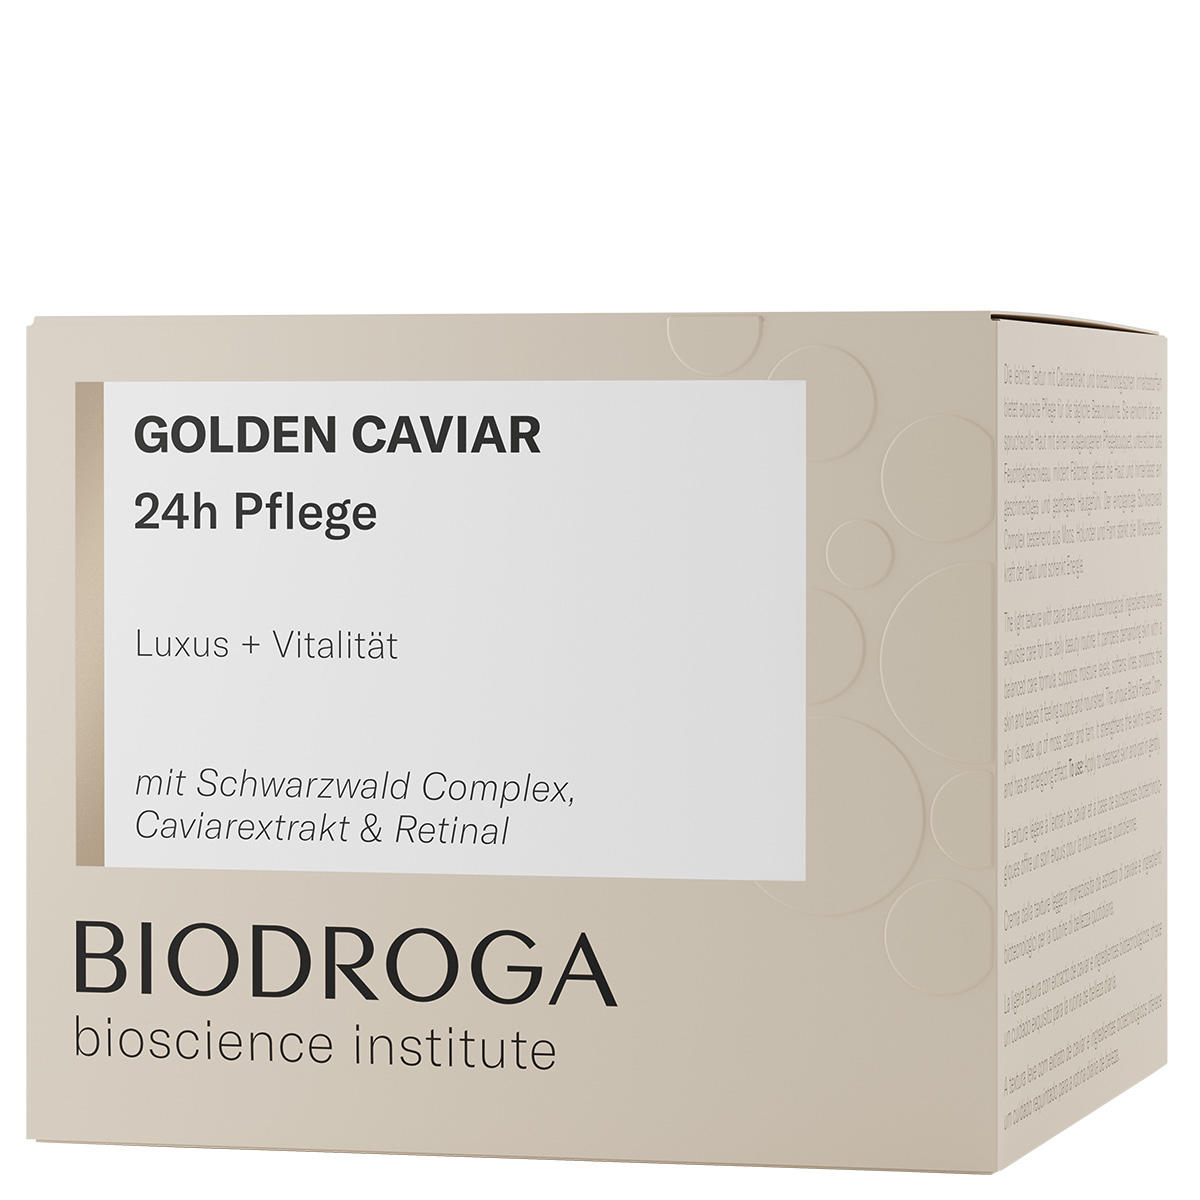 BIODROGA Bioscience Institute GOLDEN CAVIAR 24h Pflege 50 ml - 2